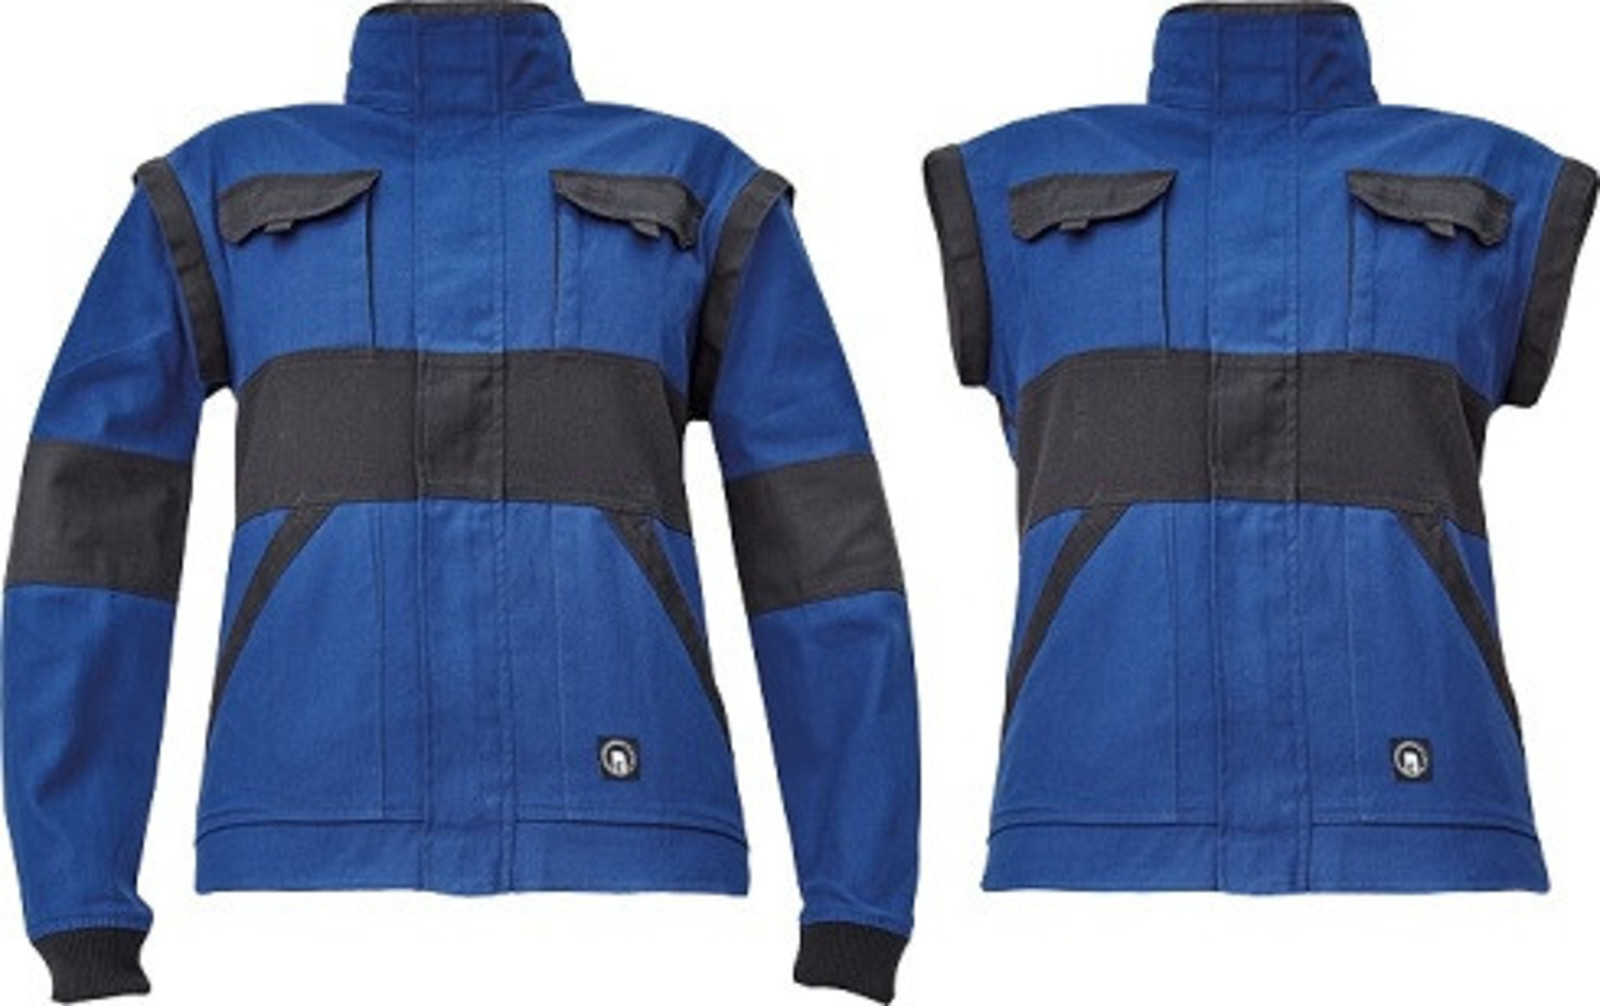 Dámska bavlnená montérková bunda Cerva Max Neo Lady 2v1 - veľkosť: 48, farba: modrá/čierna